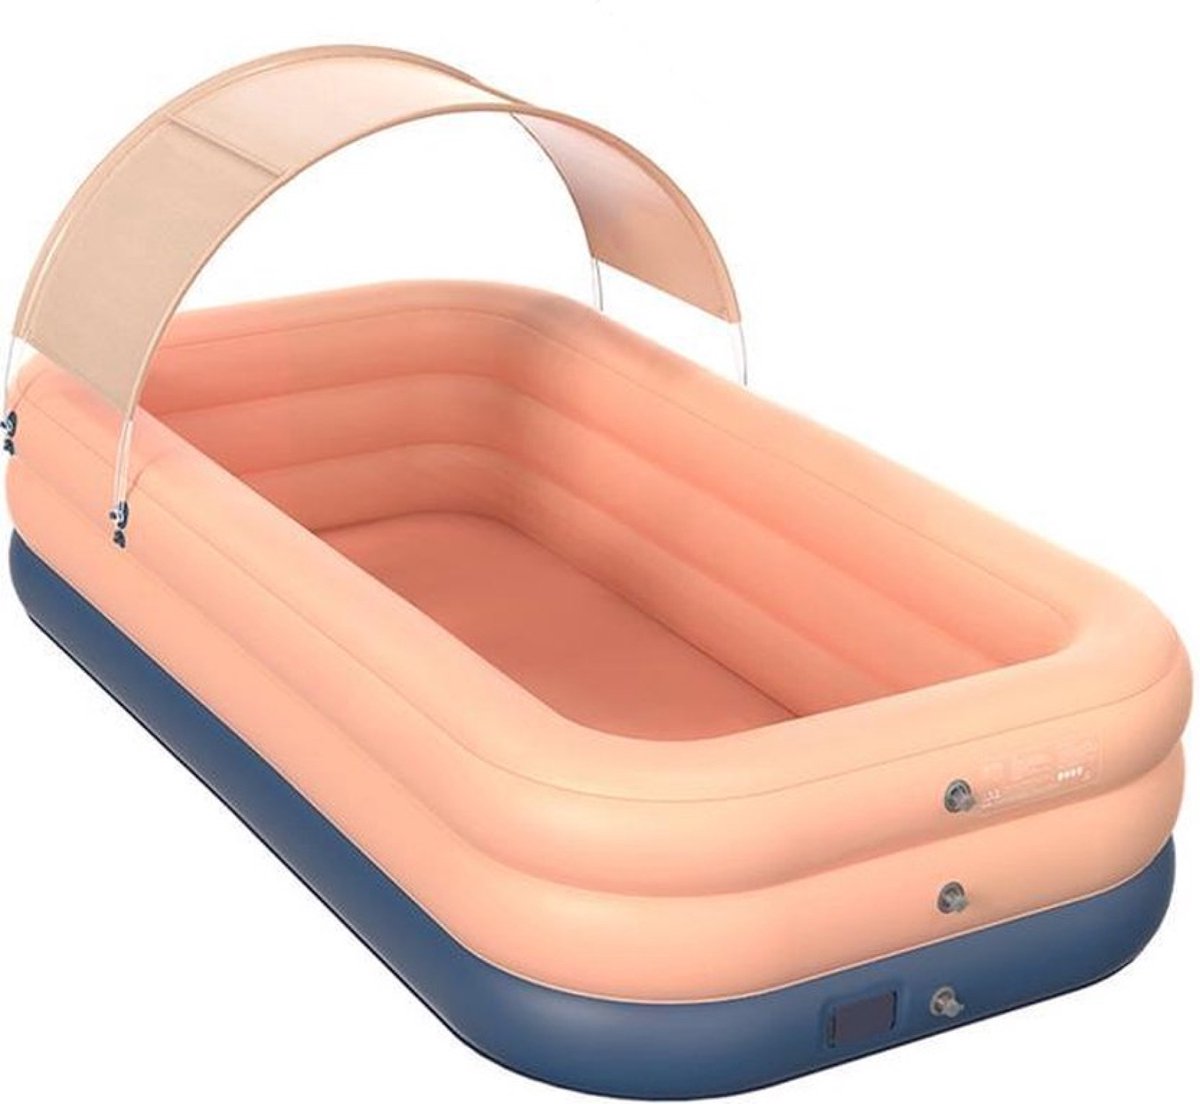 Zwembad met ingebouwde luchtpomp - Roze - 3 lagen - afneembare overkapping - geschikt voor kinderen en volwassenen